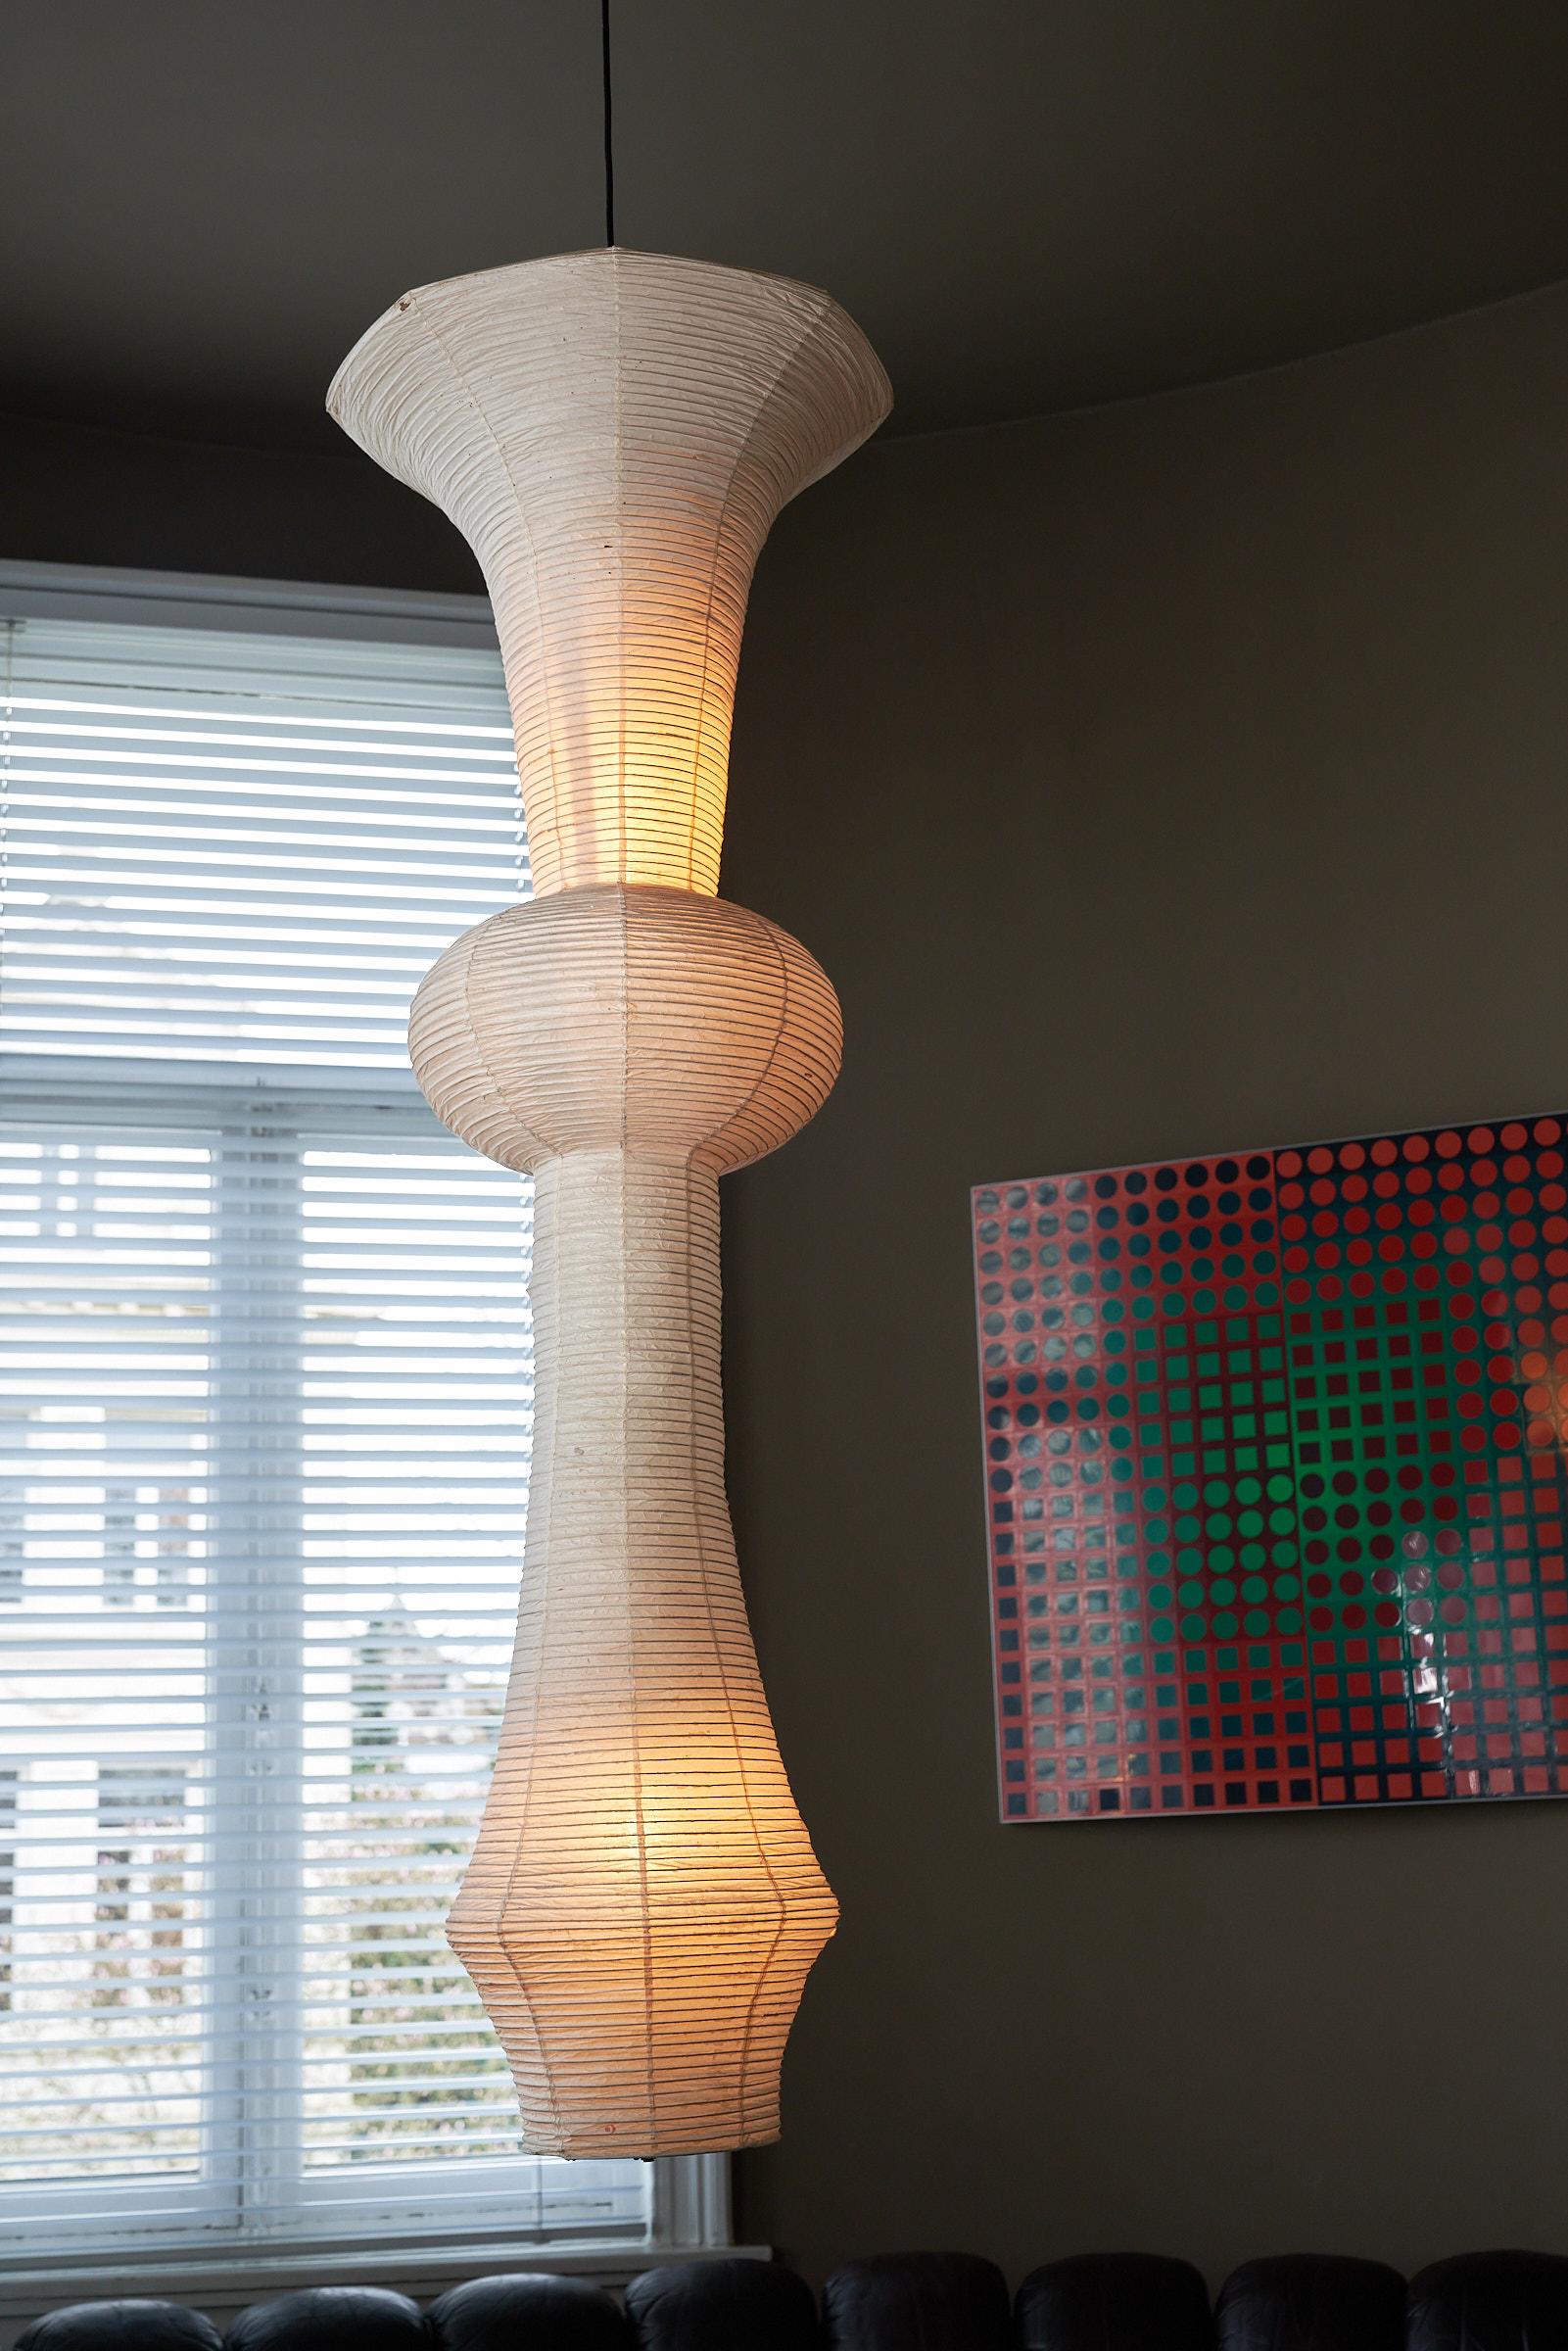 Die ikonische Akari-Lampe Modell 'H', entworfen von dem visionären Künstler Isamu Noguchi, stellt sich vor. Dieses Hängemodell aus der berühmten Akari-Serie besticht durch eine faszinierende Mischung aus Form und Funktion.

Jedes Stück der